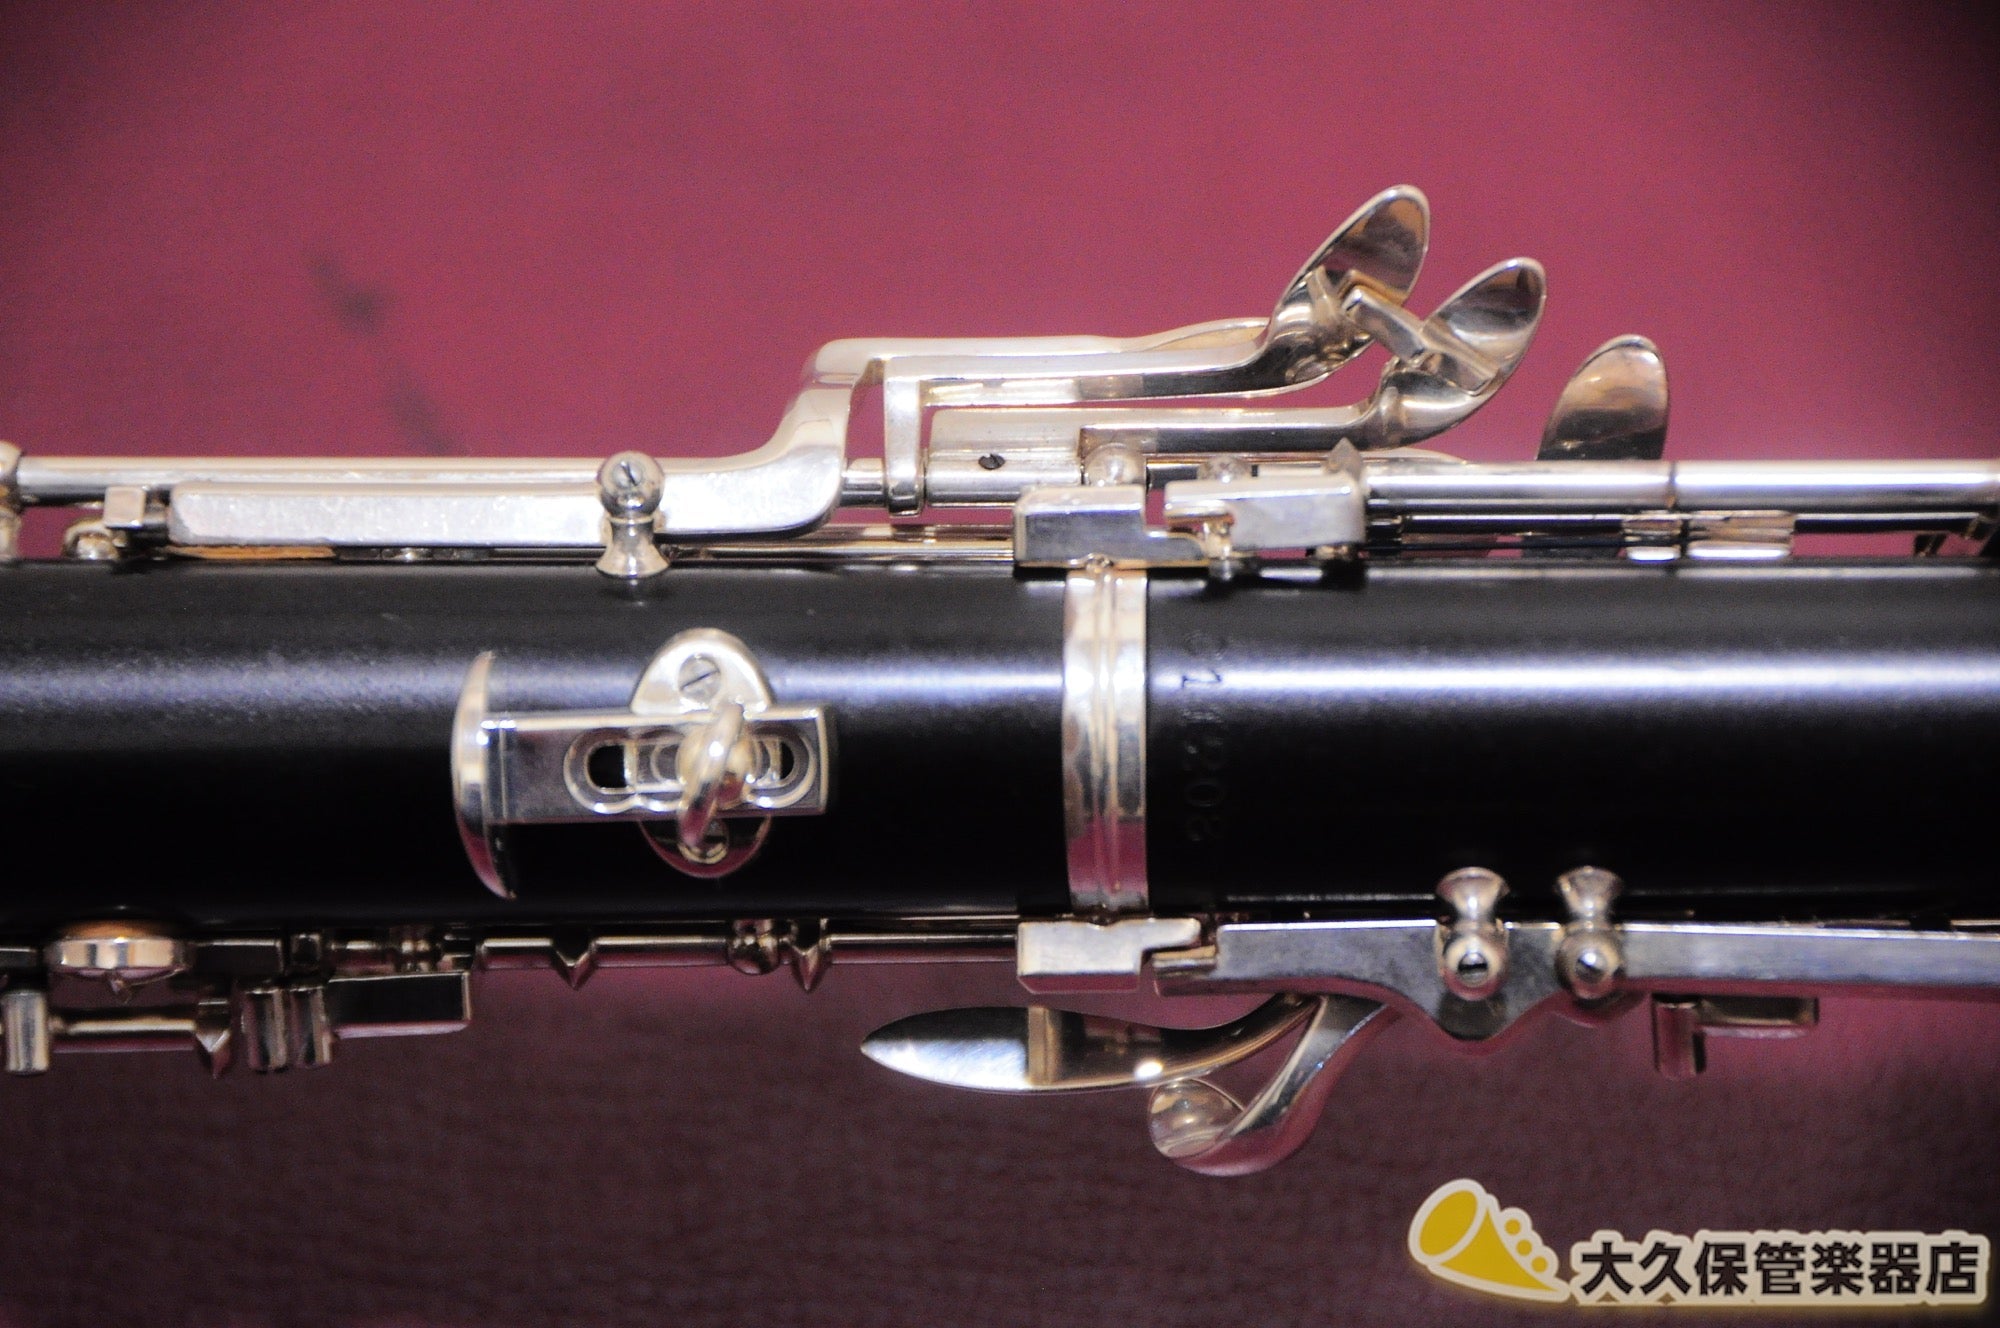 ビュッフェ・クランポン R47 GL セミオート・オーボエ - TC楽器 - TCGAKKI